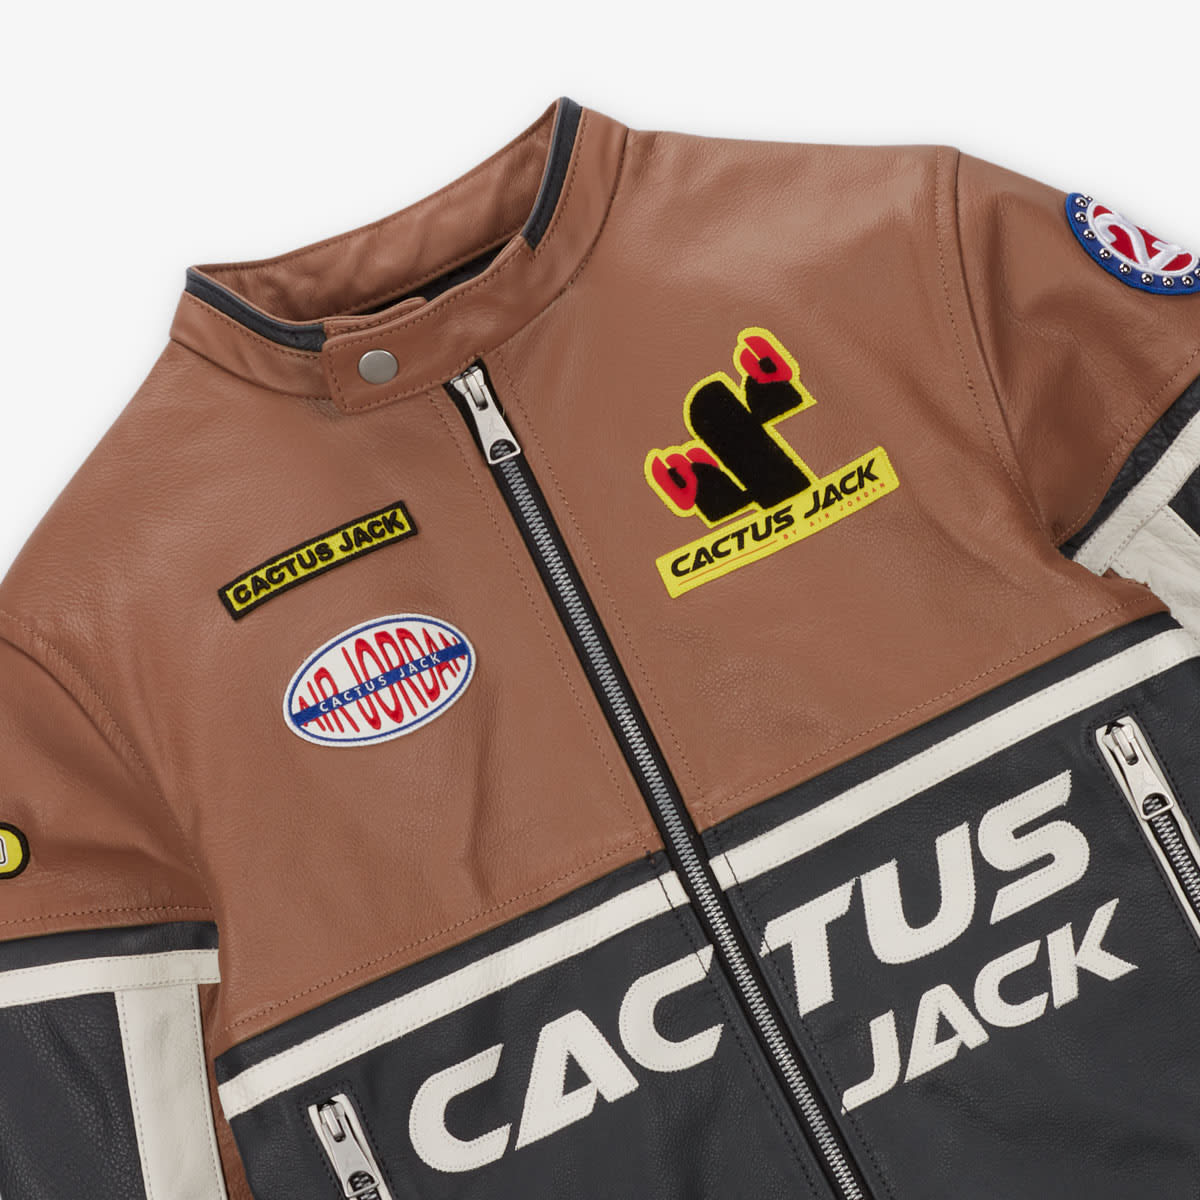 Cactus Jack Leather Jacket